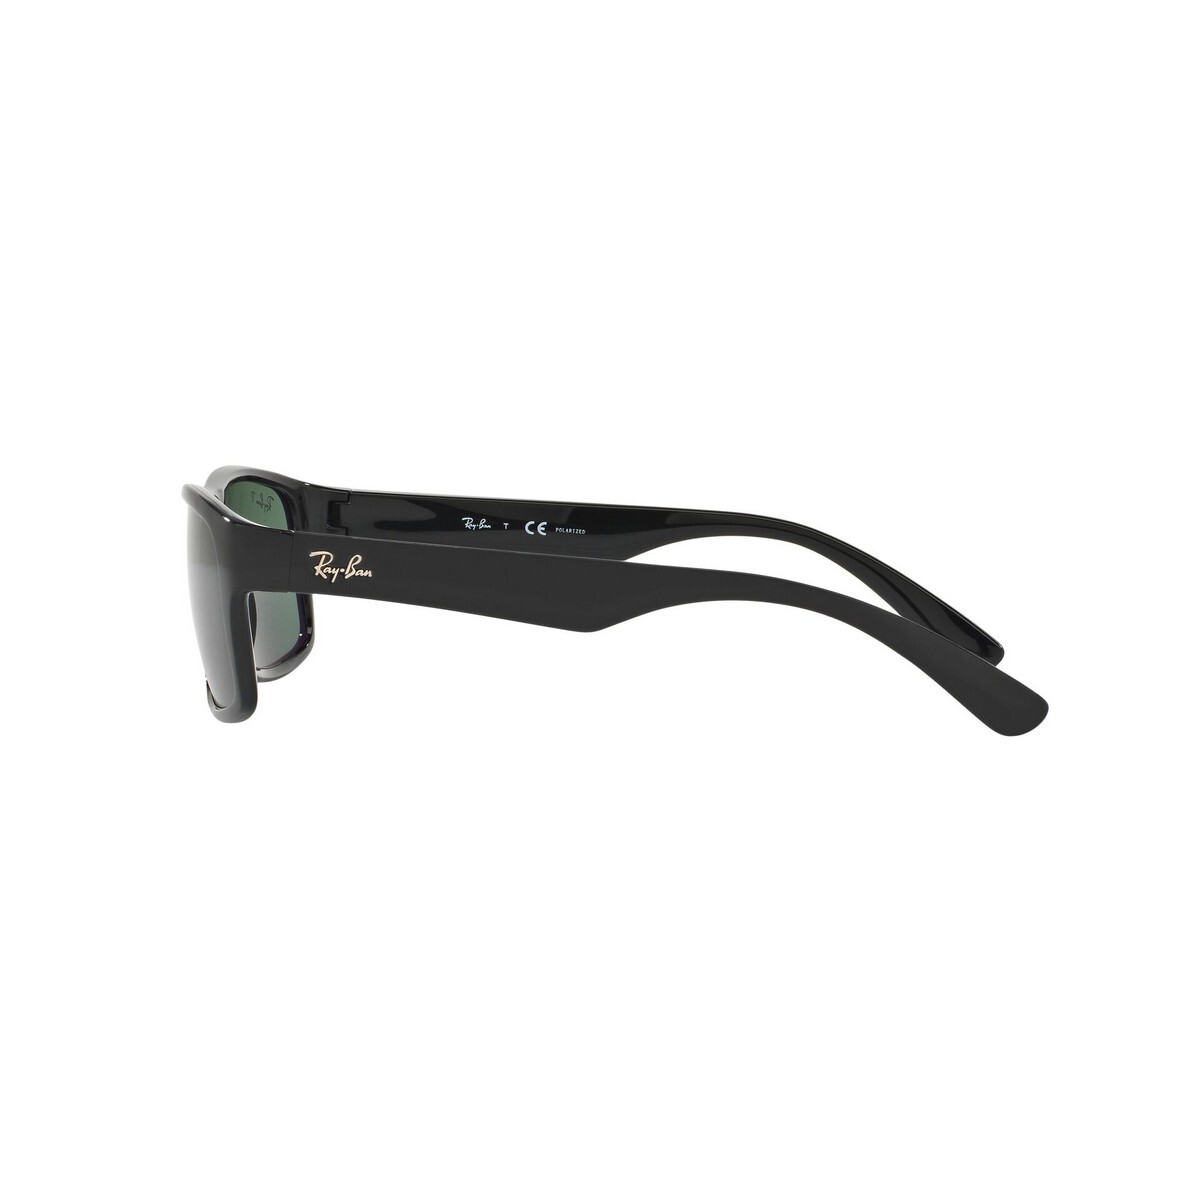 Rayban Unisex Black Frame With Polar Green Lens Sunglass